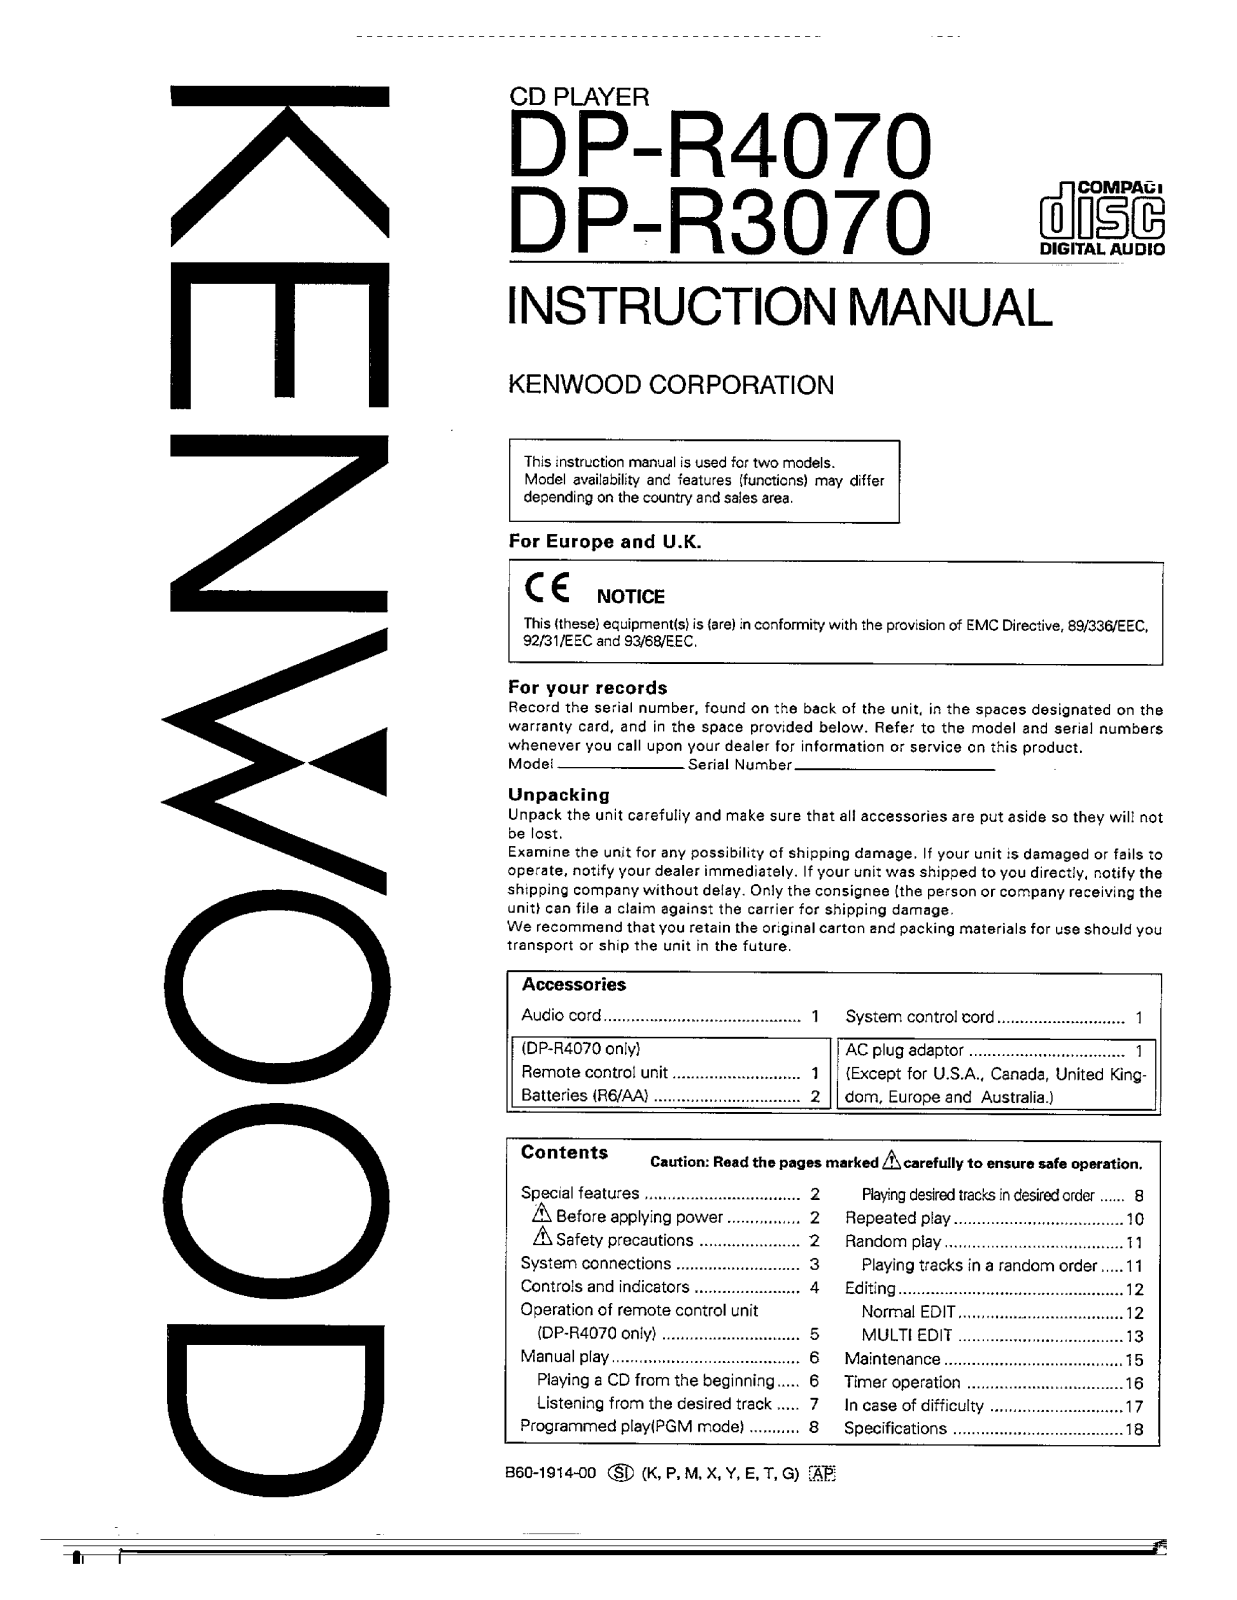 Kenwood DP-R4070, DP-R3070 Owner's Manual